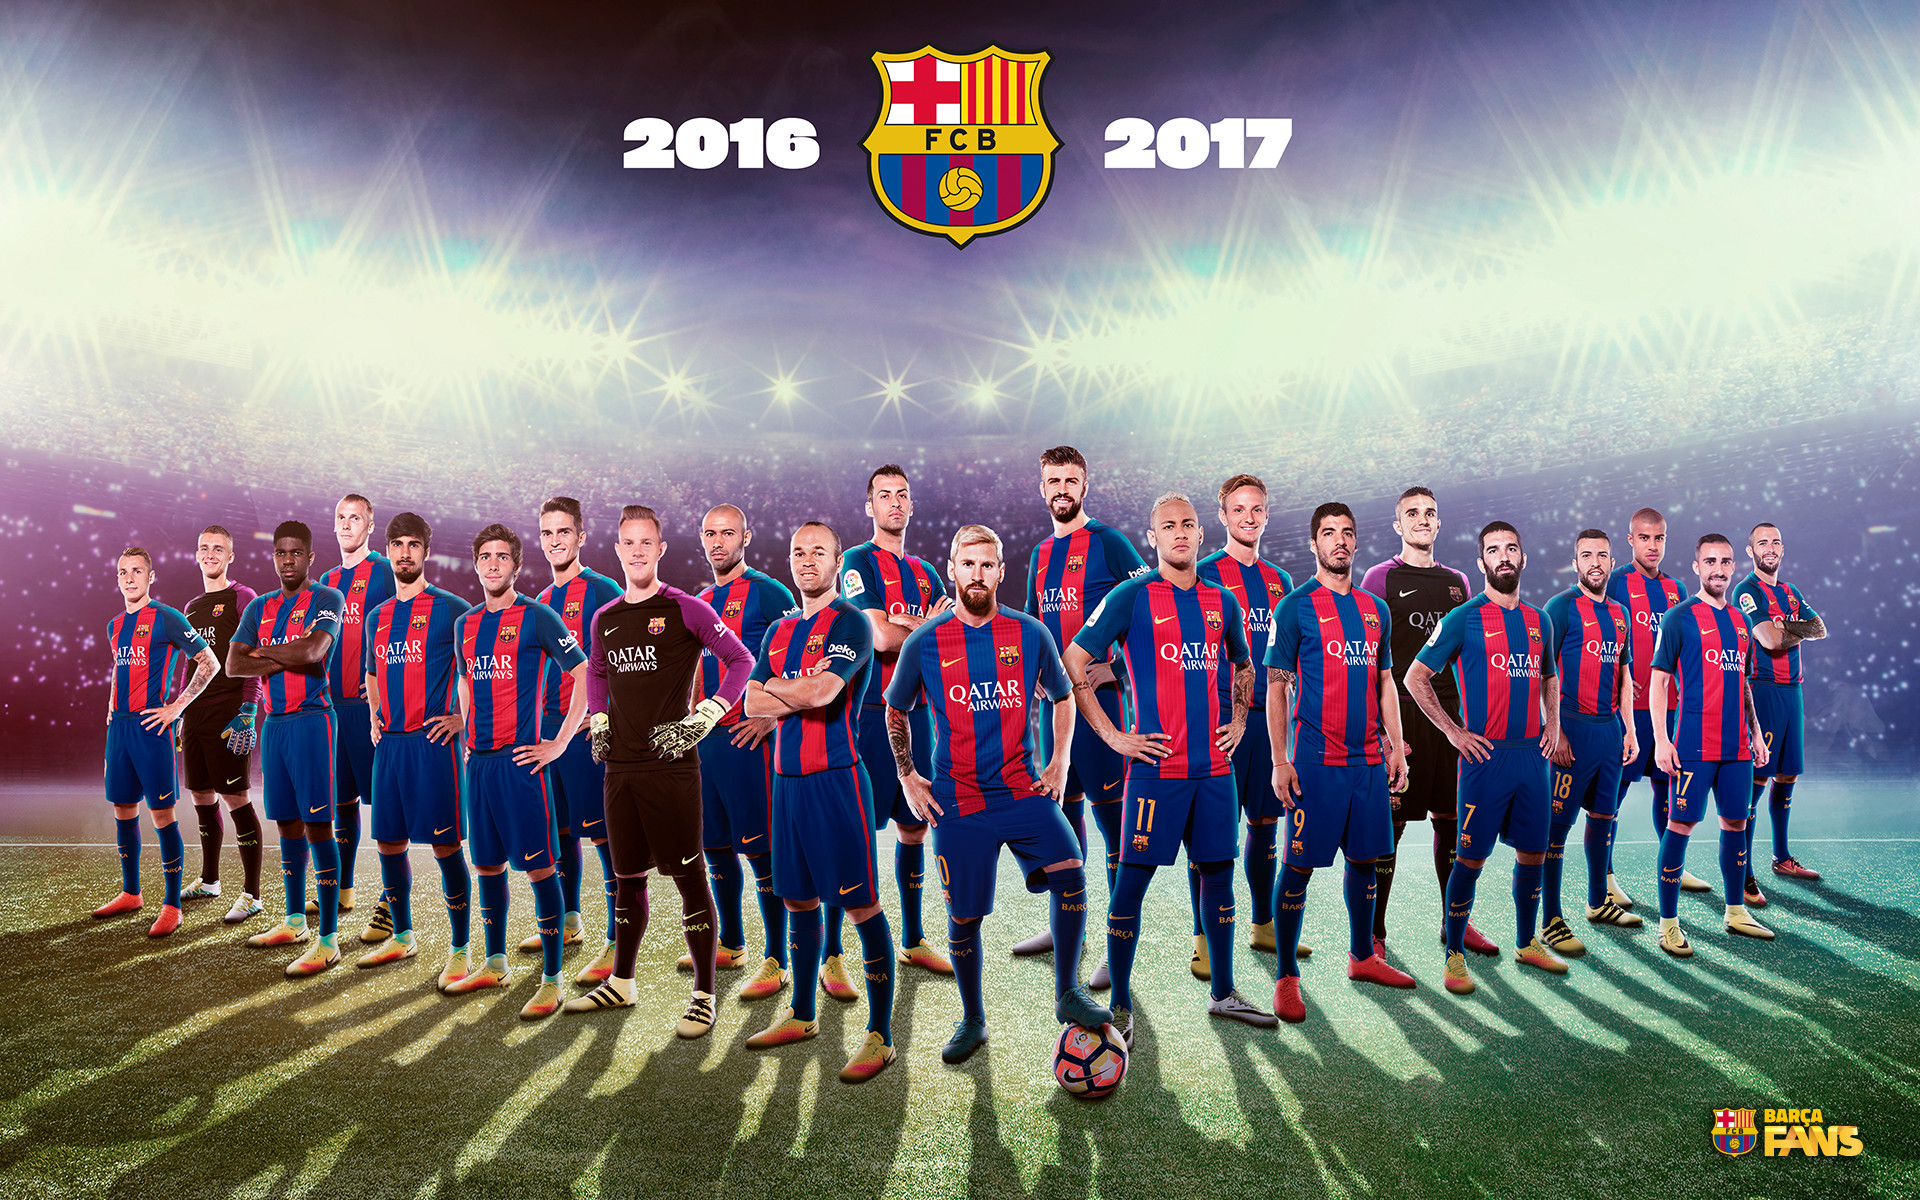 fond d'écran fc barcelona 2017,équipe,joueur,joueur de football,joueur de football,championnat